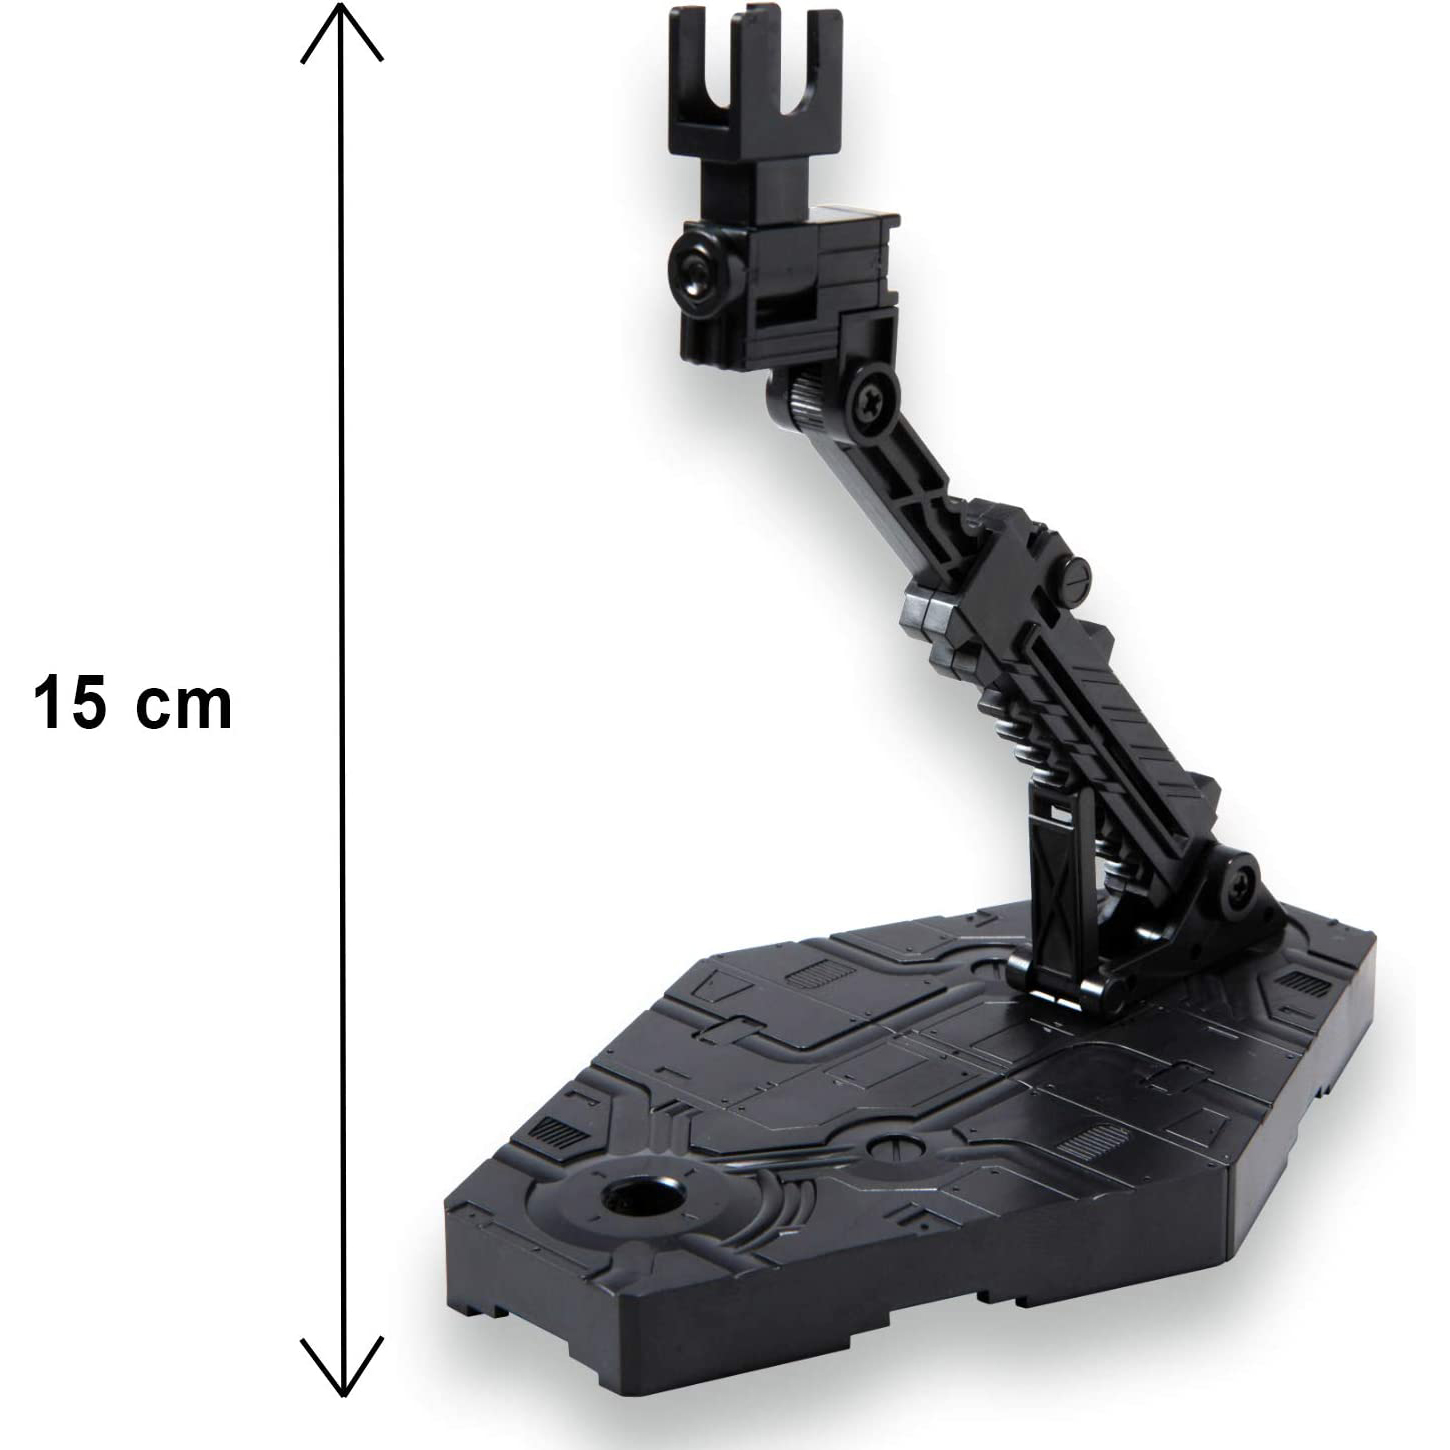 鋼彈gundam組合模型 HGUC 1/144專用腳架 (黑)